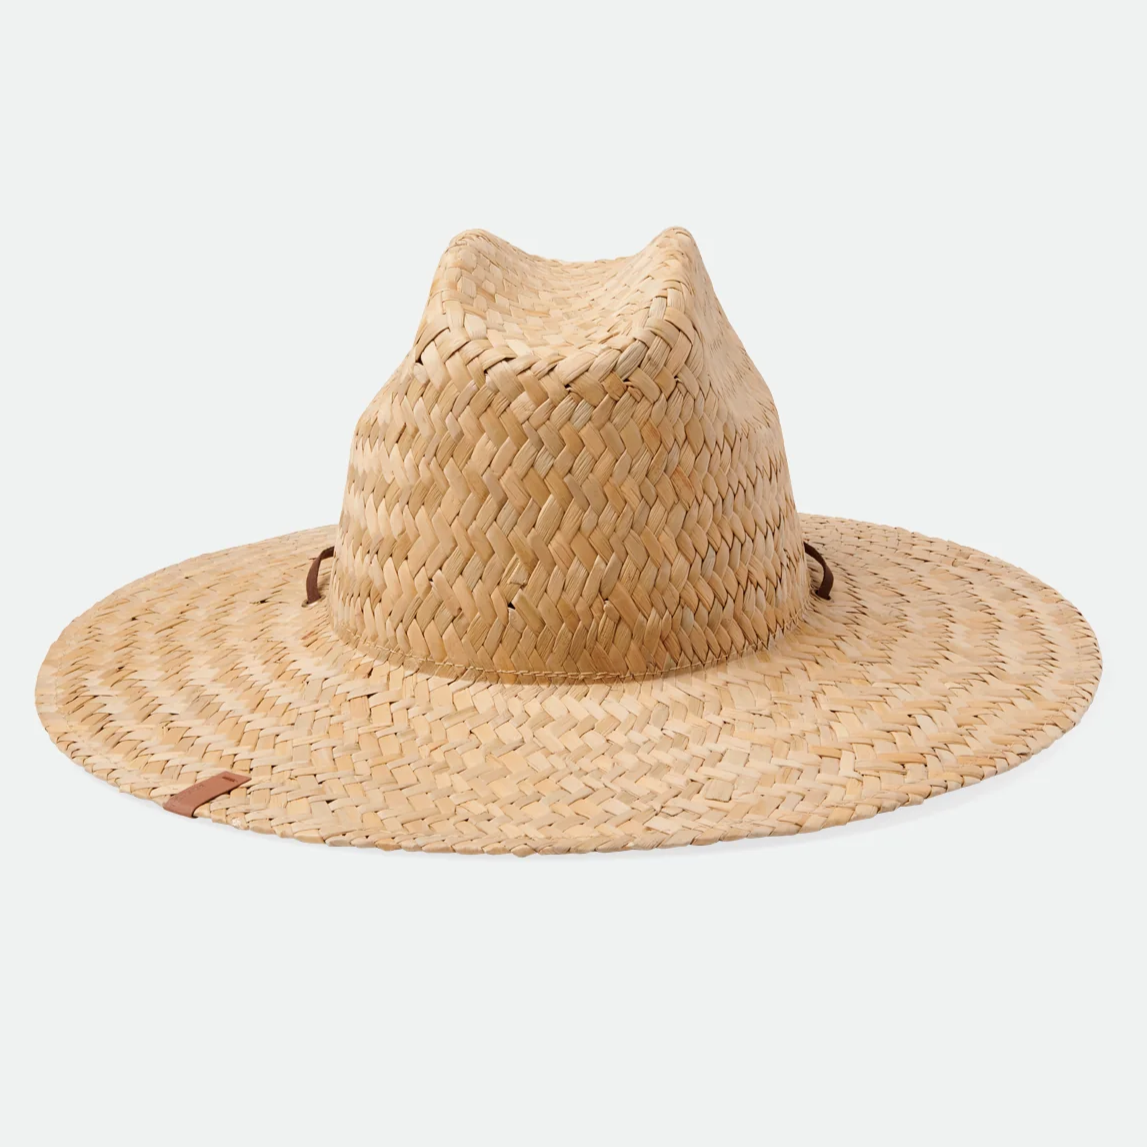 Brixton Bells II Lifeguard Hat Straw Hat Tan Tan 11162 TANTN